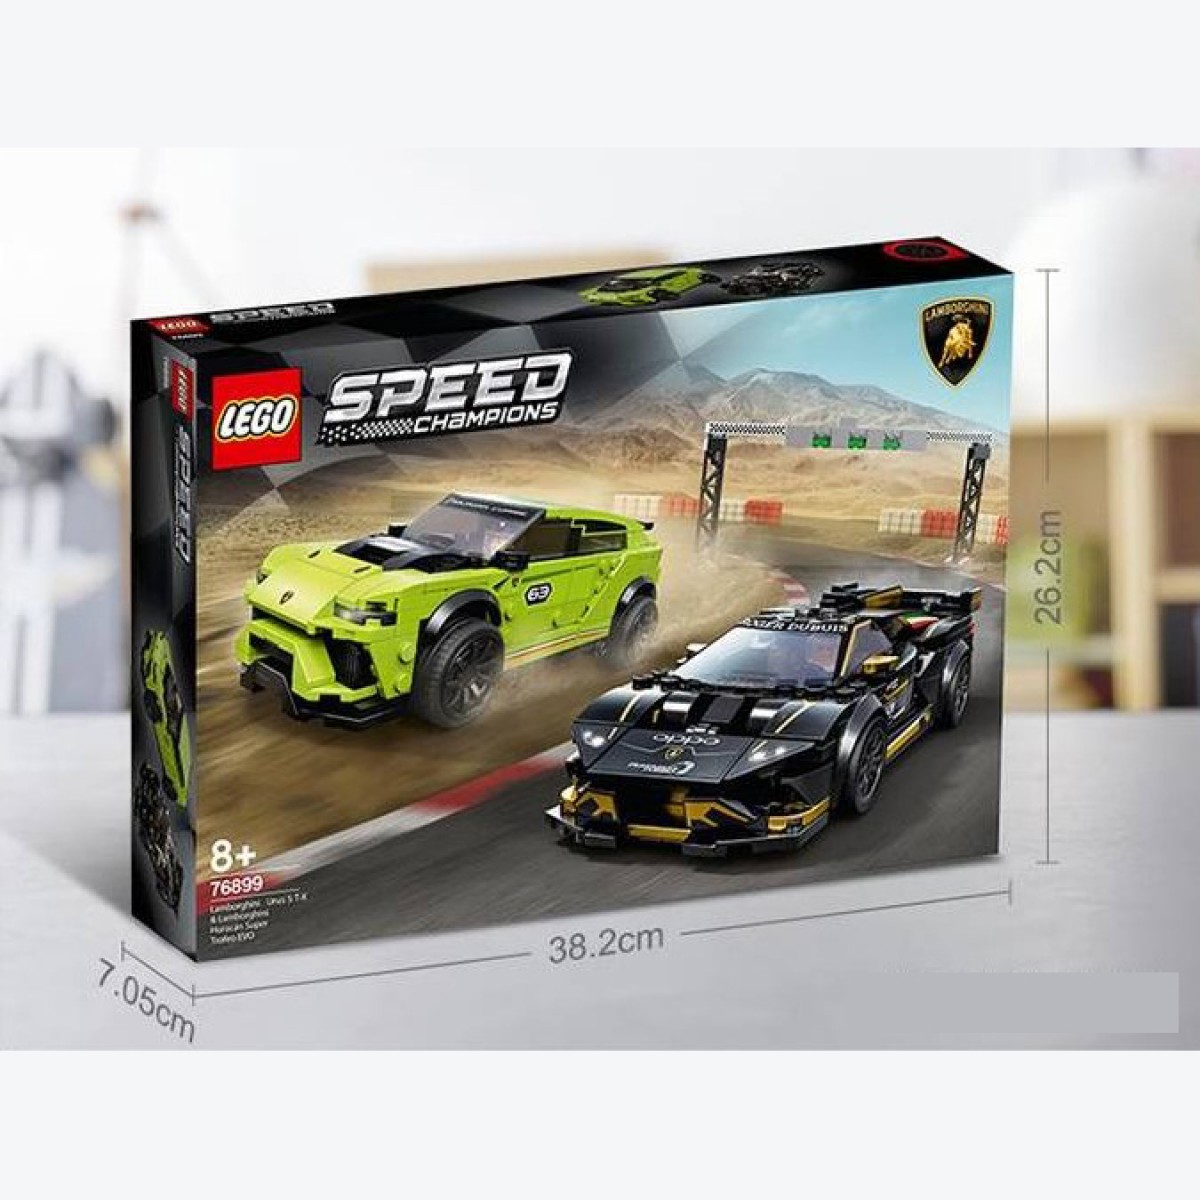 LEGO樂高拼插積木玩具賽車系列 蘭博基尼賽車組雙車型收藏版76899